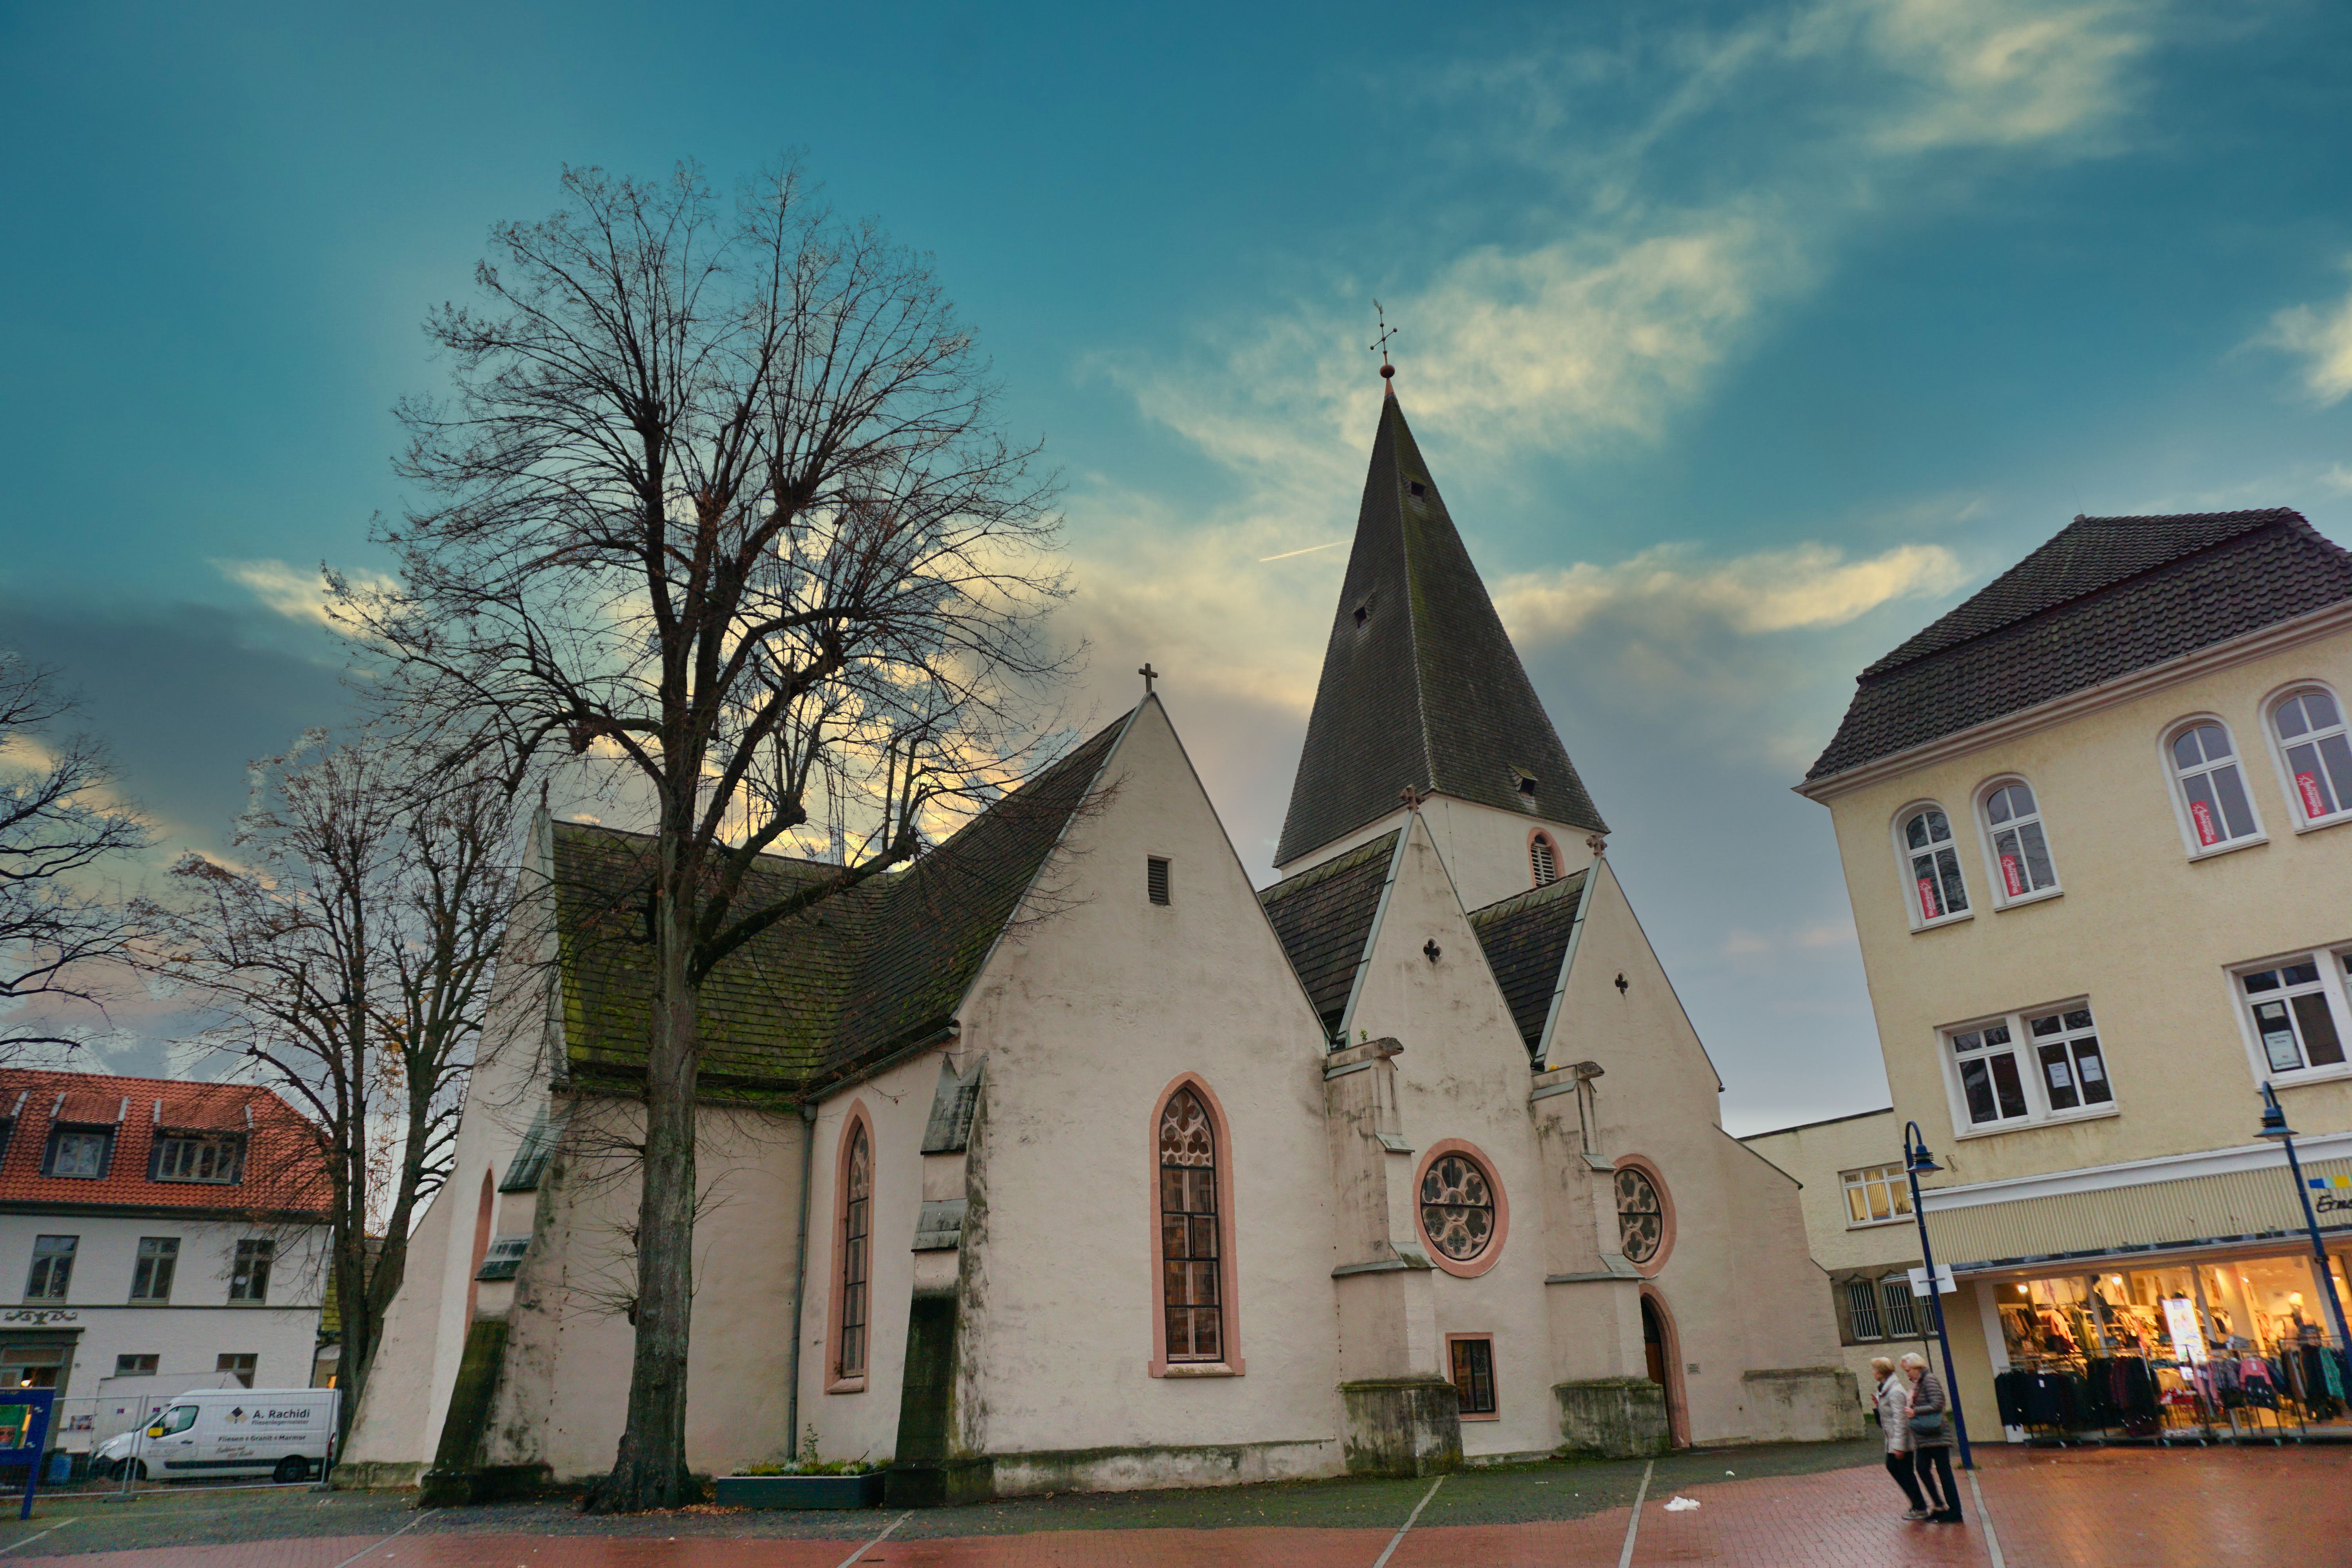 Marktkirche, Lage.
